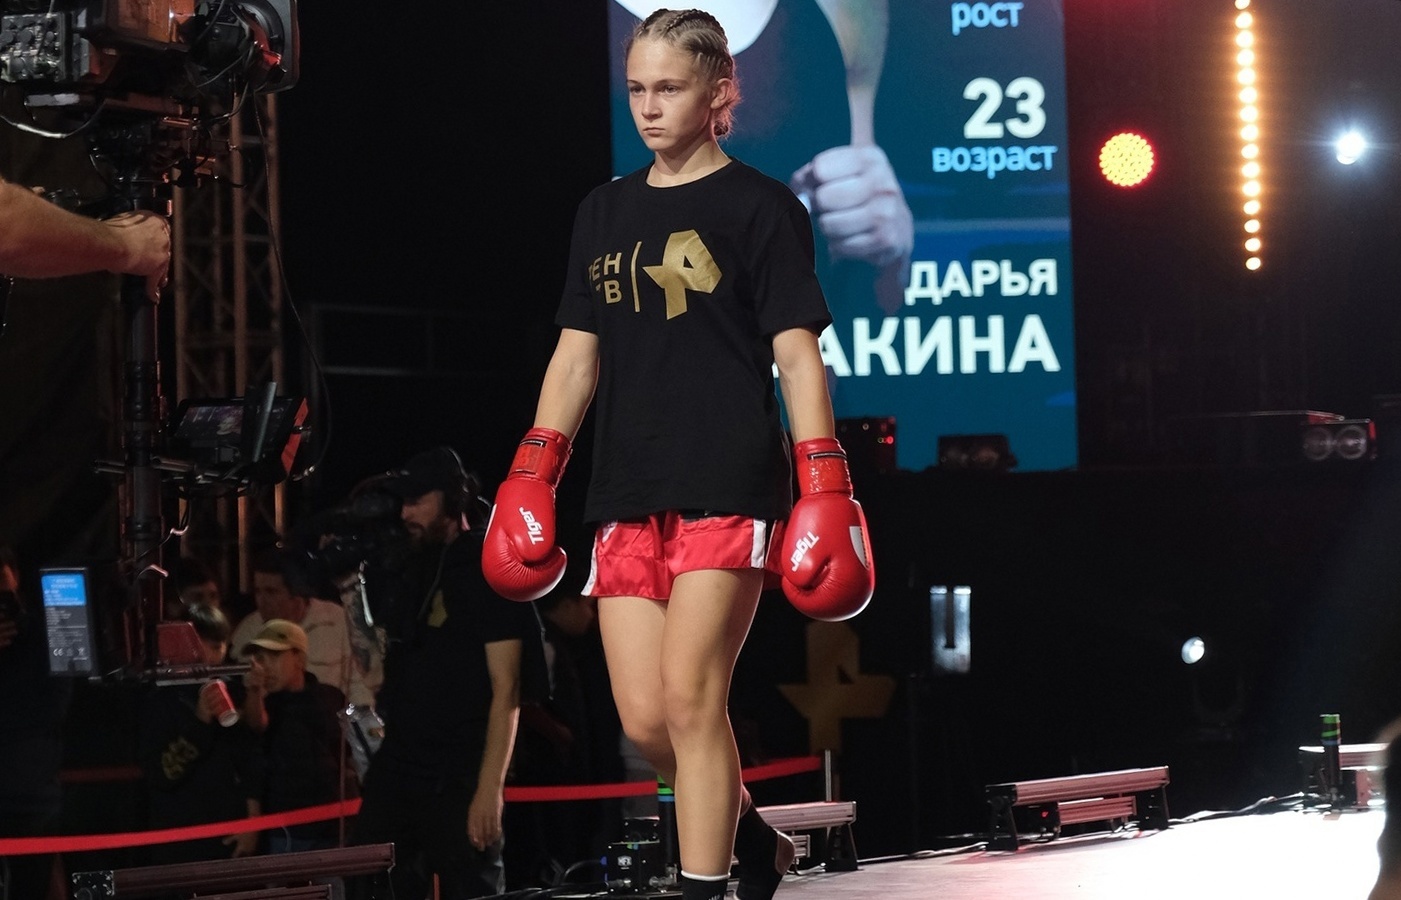 Ярославская спортсменка завоевала золото на международном турнире по кикбоксингу